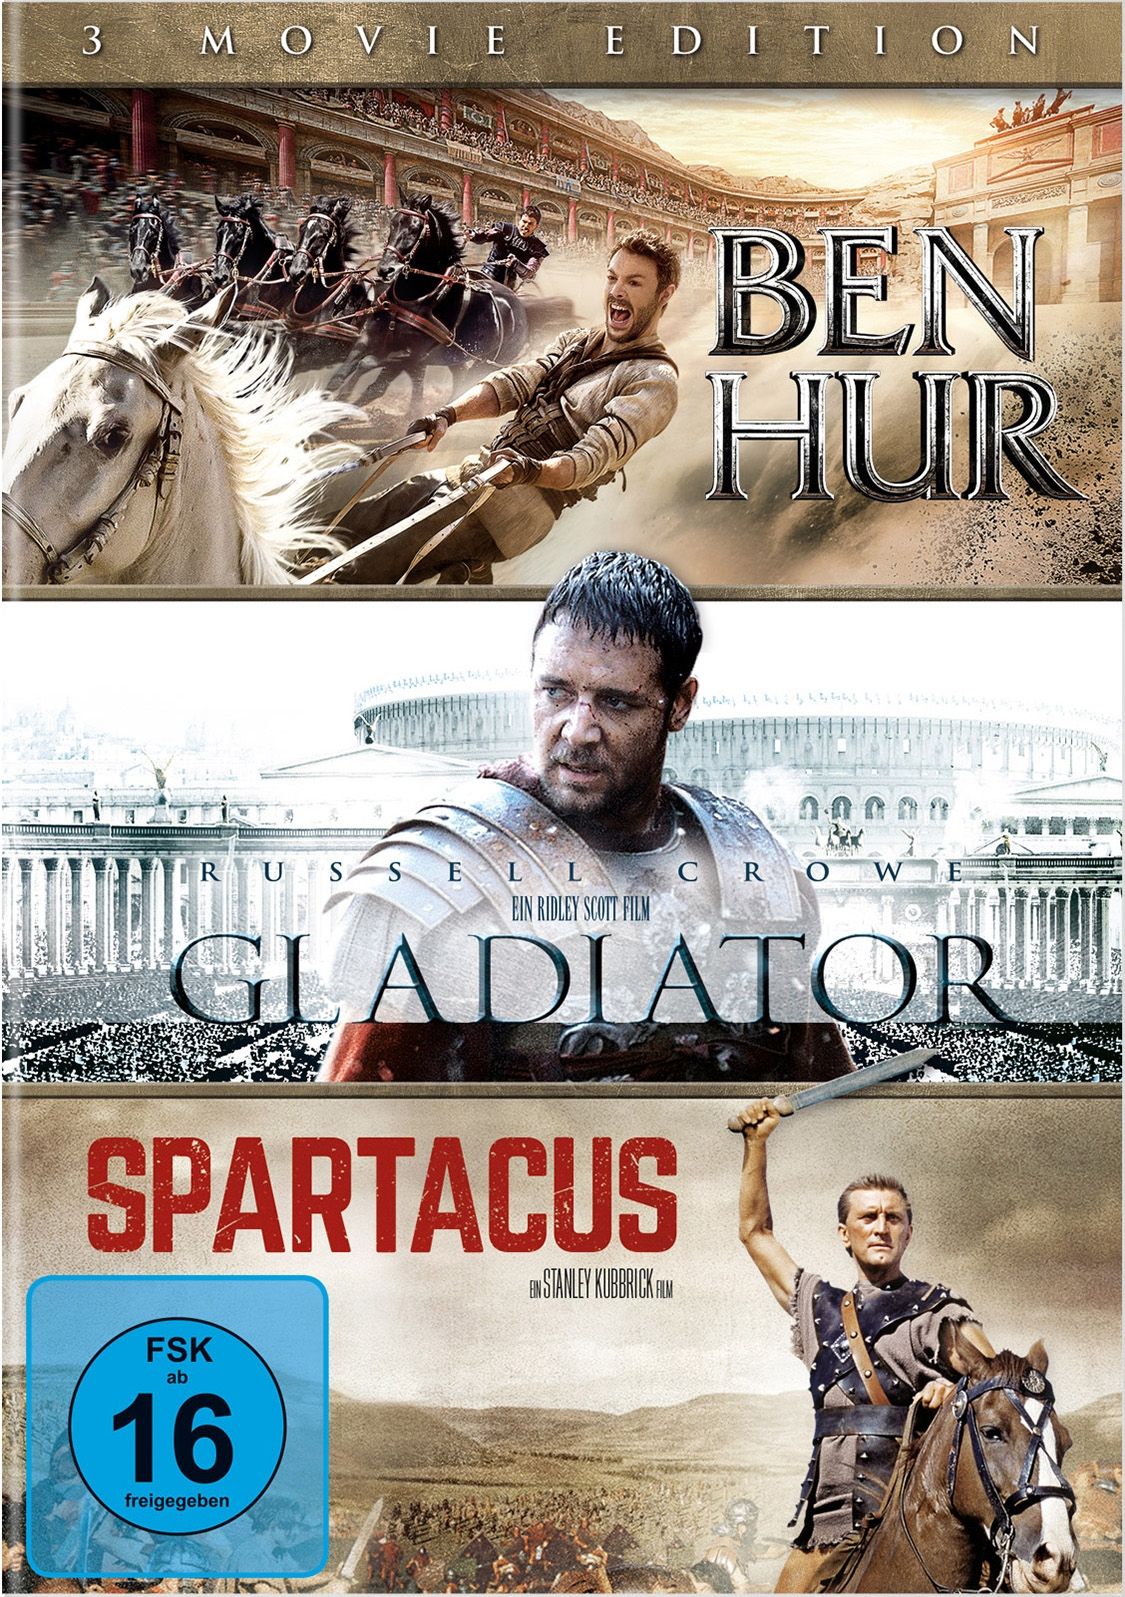 Ben Hur (2016) / Gladiator / Spartacus (3 Movie Edition) (3 Discs)